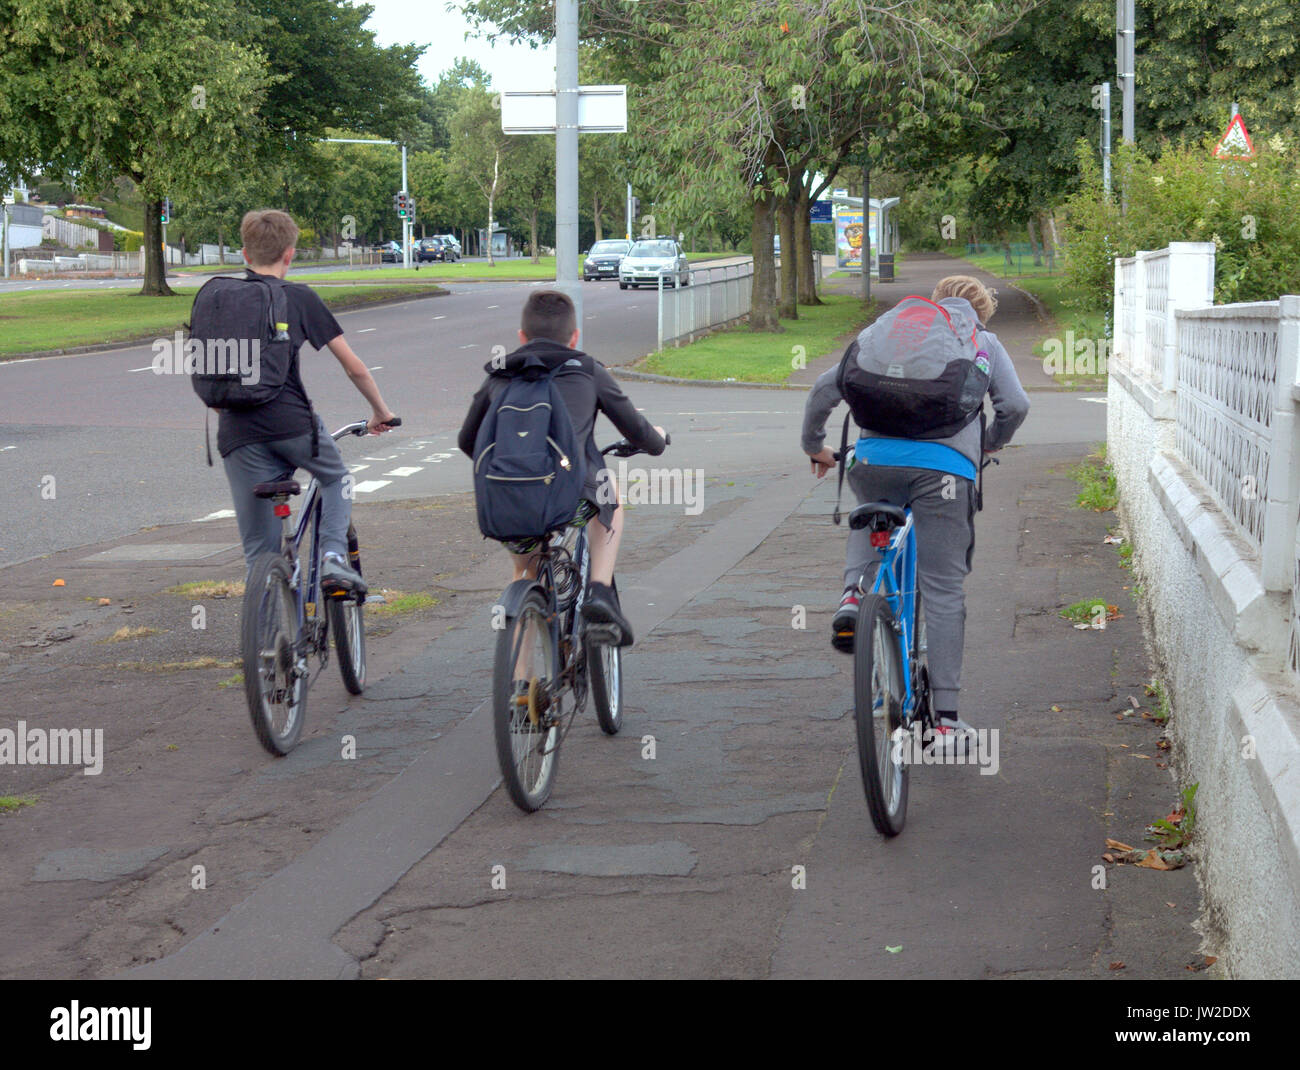 Tre ragazzi su biciclette corsa sul marciapiede godendo le vacanze estive o viaggiare a scuola con sacchetti Foto Stock